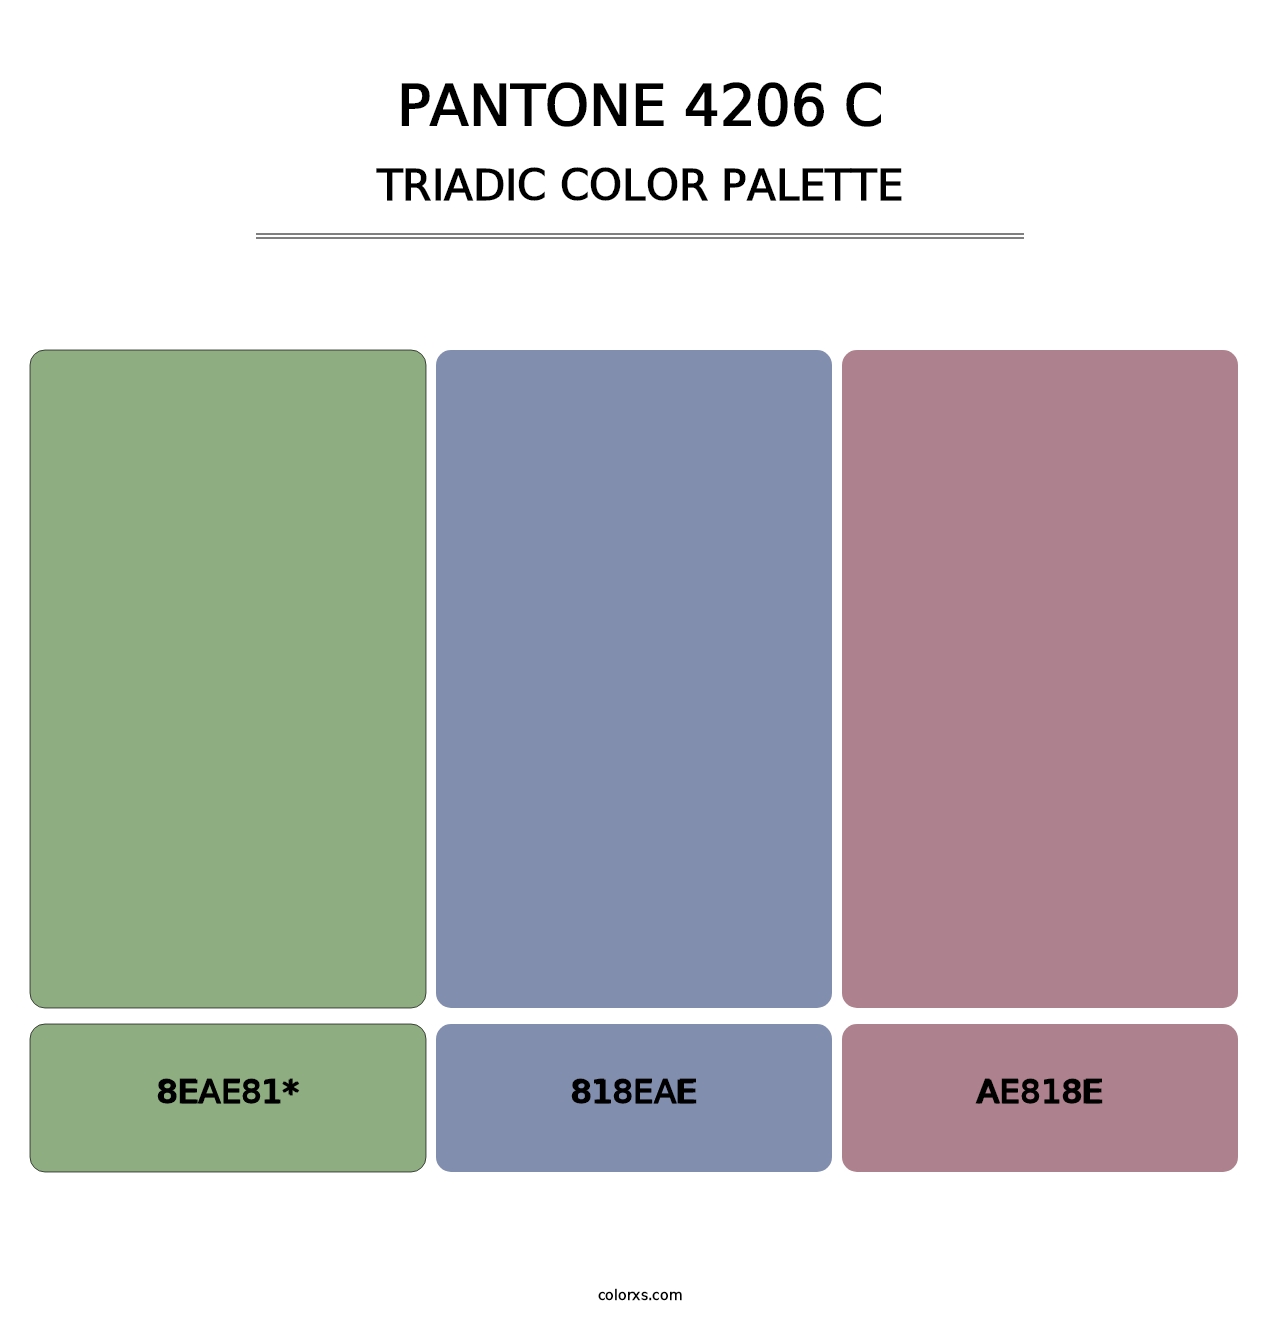 PANTONE 4206 C - Triadic Color Palette